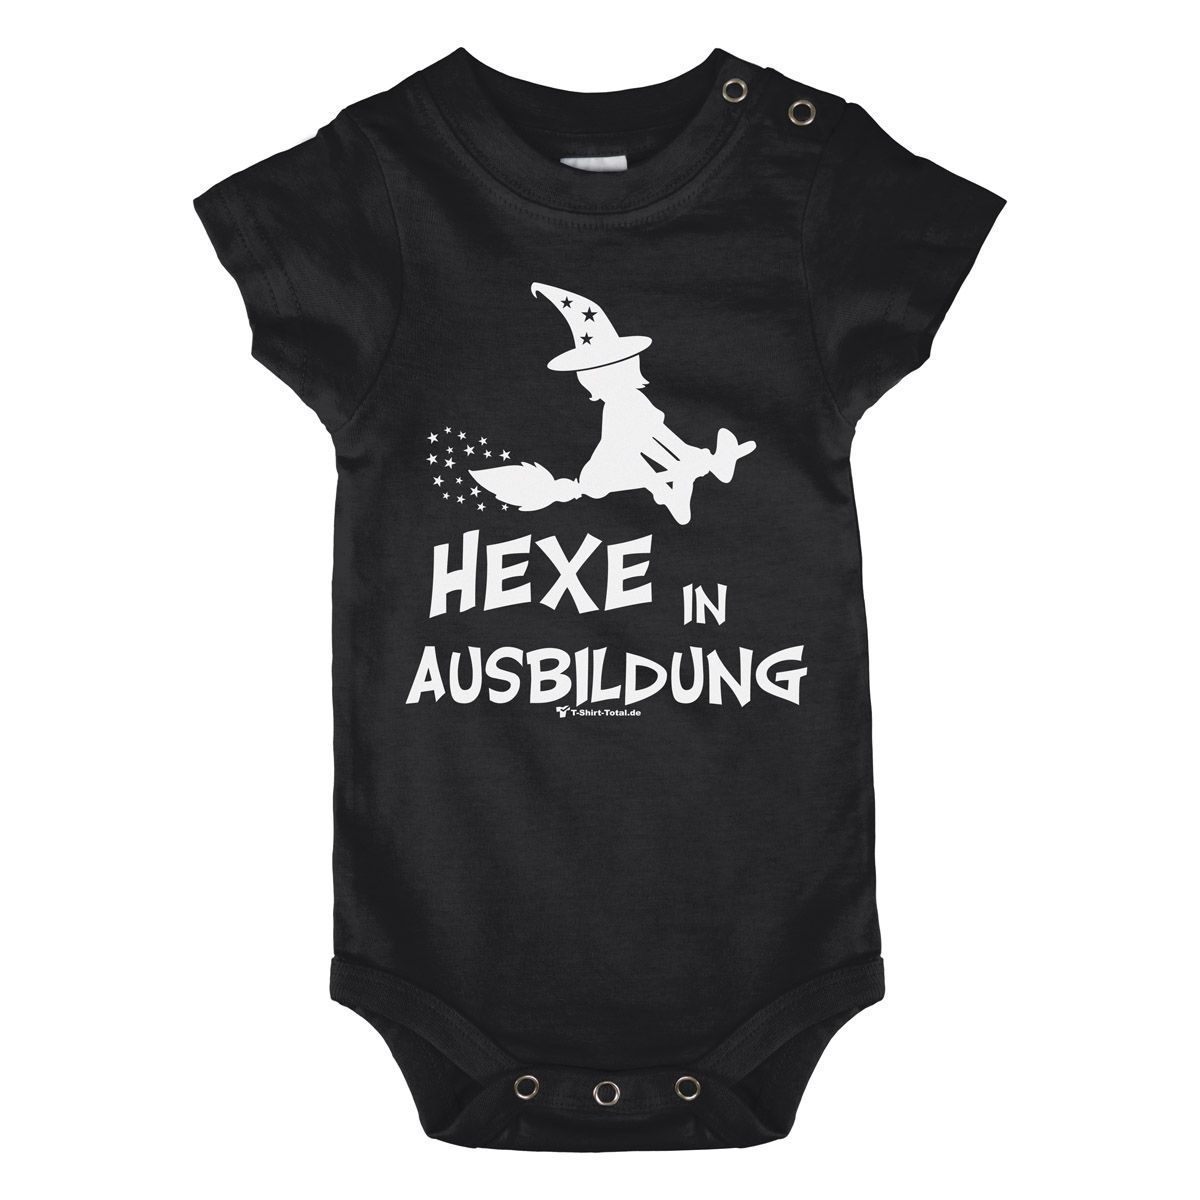 Hexe in Ausbildung Baby Body Kurzarm schwarz 68 / 74